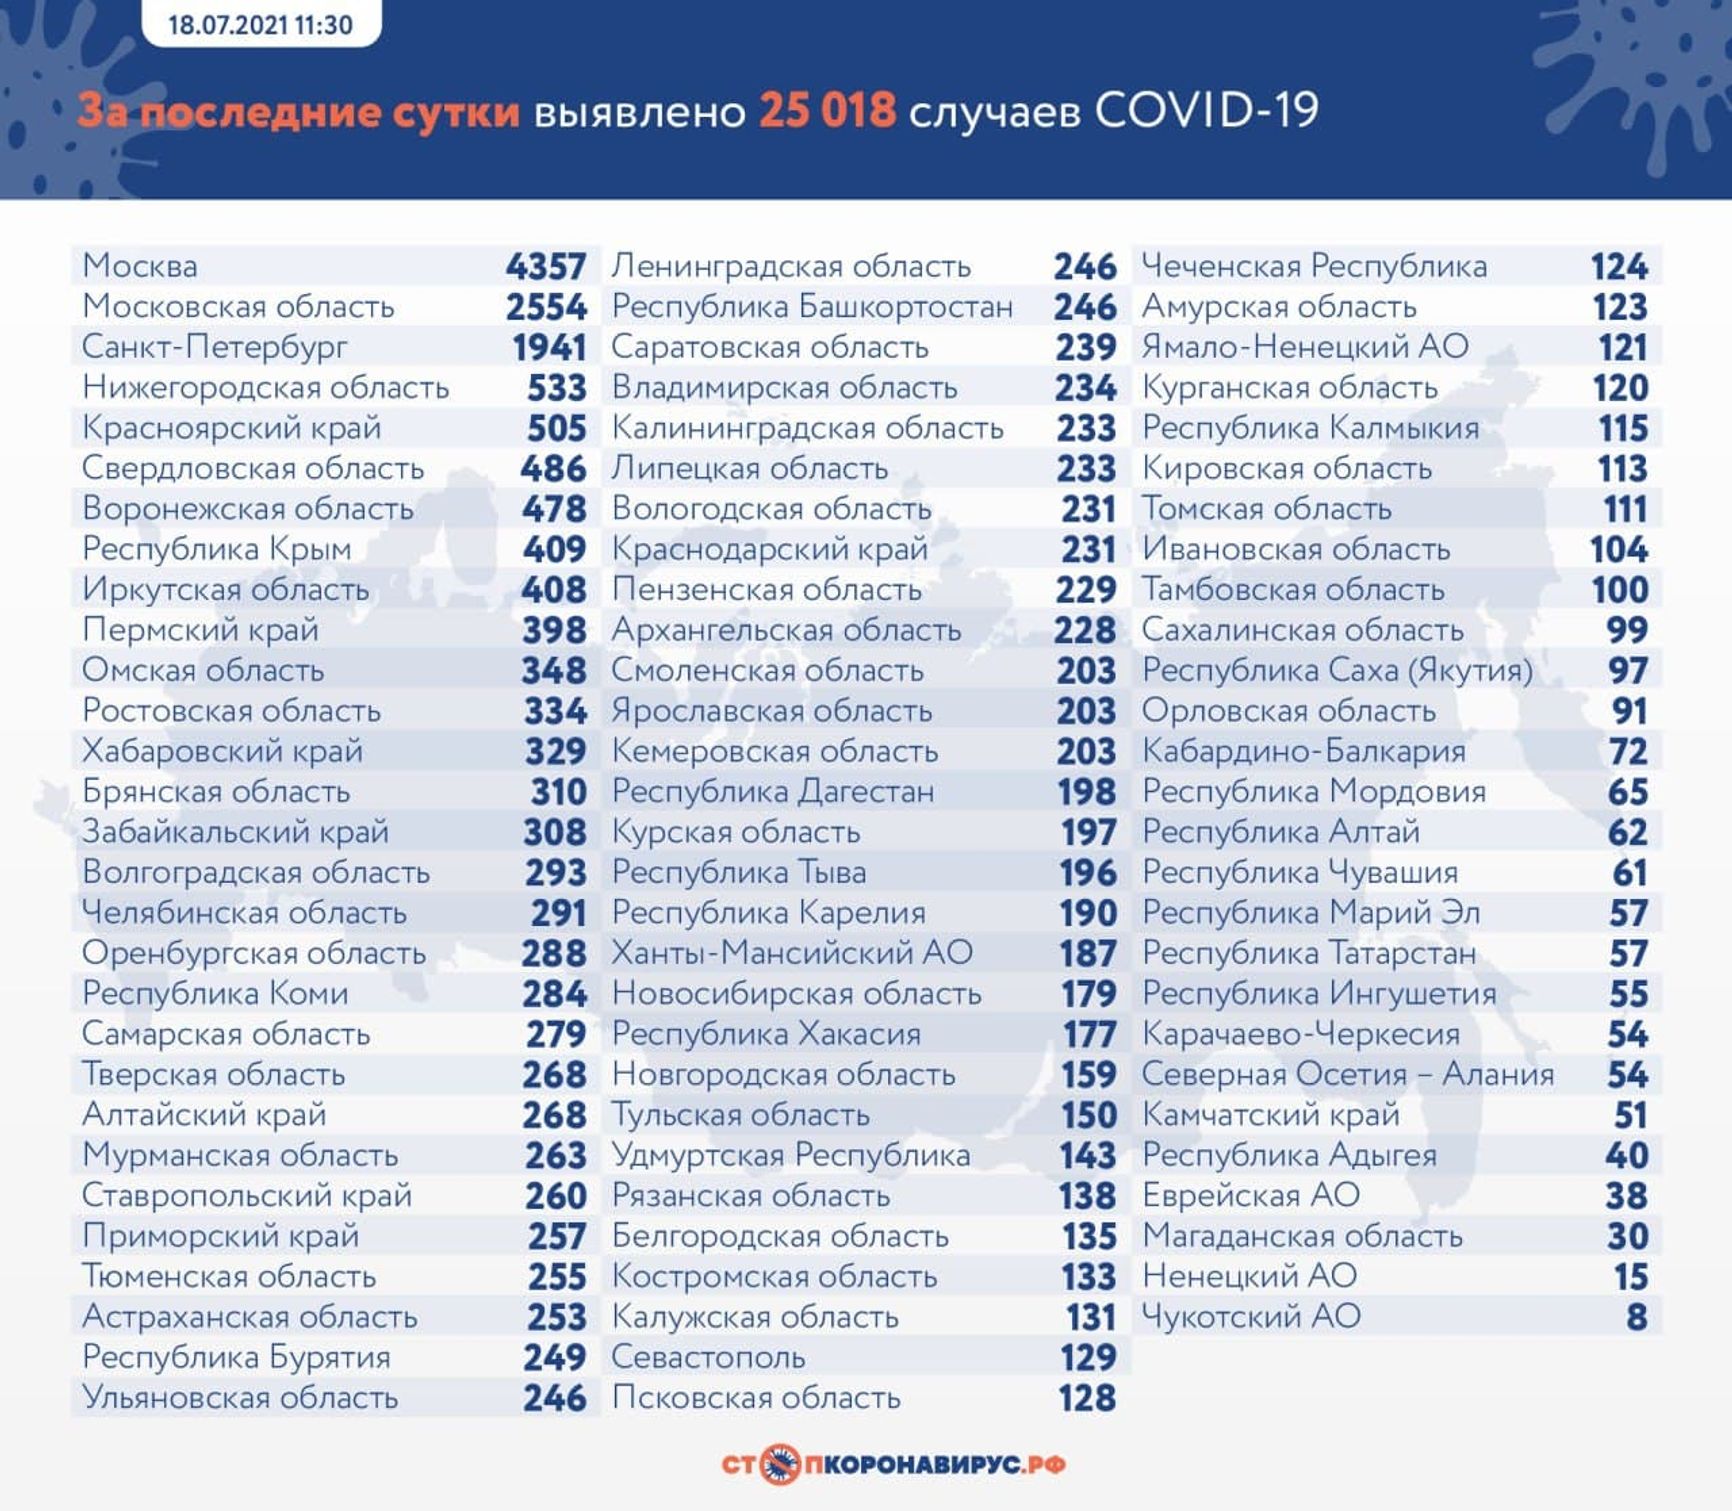 У Росії за добу виявили 25 018 випадків зараження коронавірусів. 4357 з них - в Москві